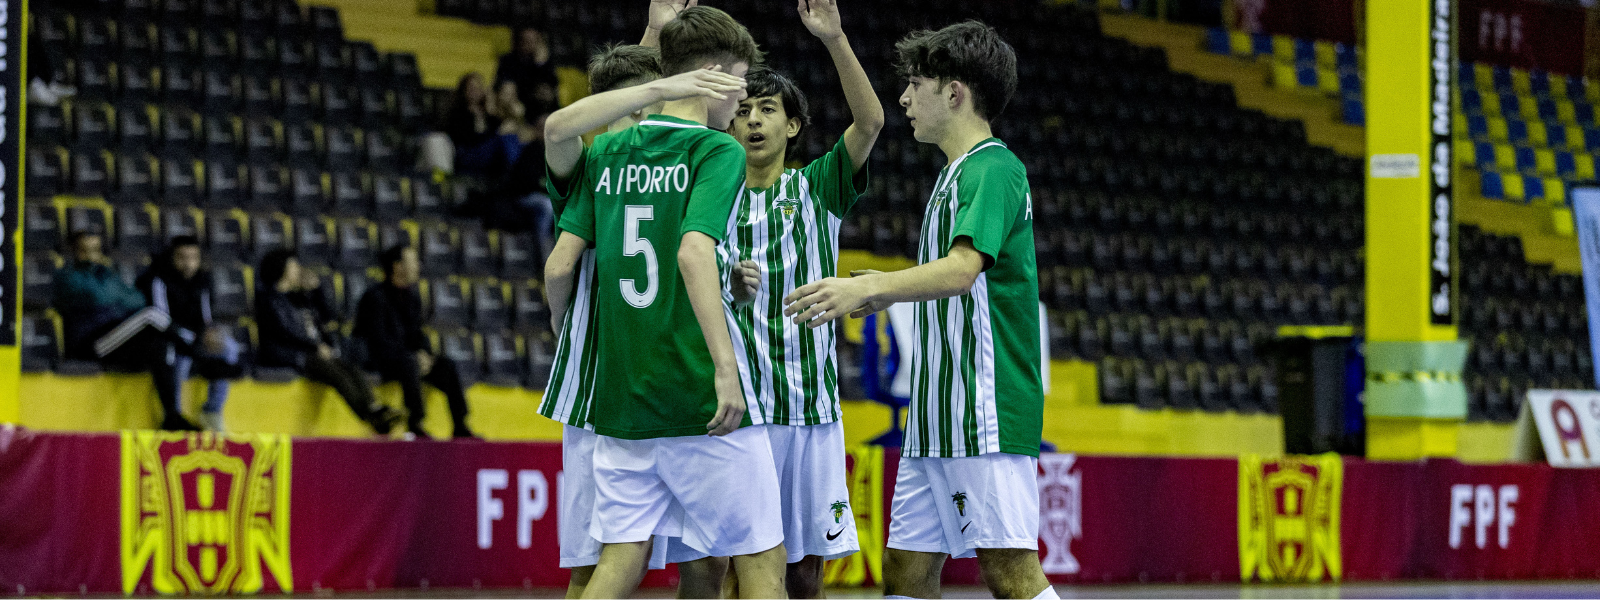 Calendário de jogos - Torneio Interassociações Sub/17 - Futsal Masculino